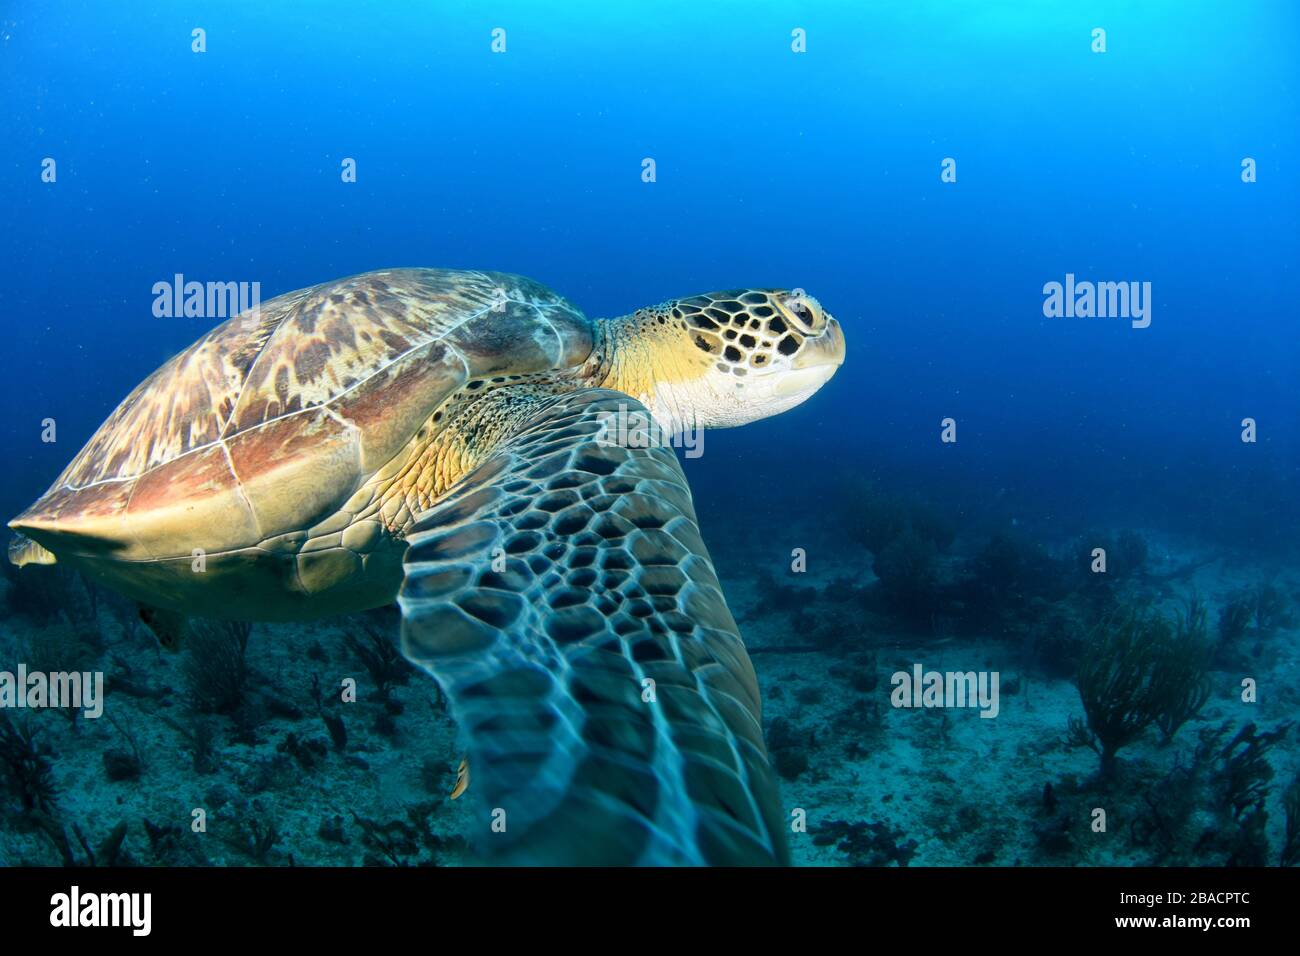 Große grüne Schildkröte schwimmen Akros die Tauchbasis Cable Reef und Tiegland, das sind einige der Tauchplätze rund um die Insel St. Maarten Stockfoto